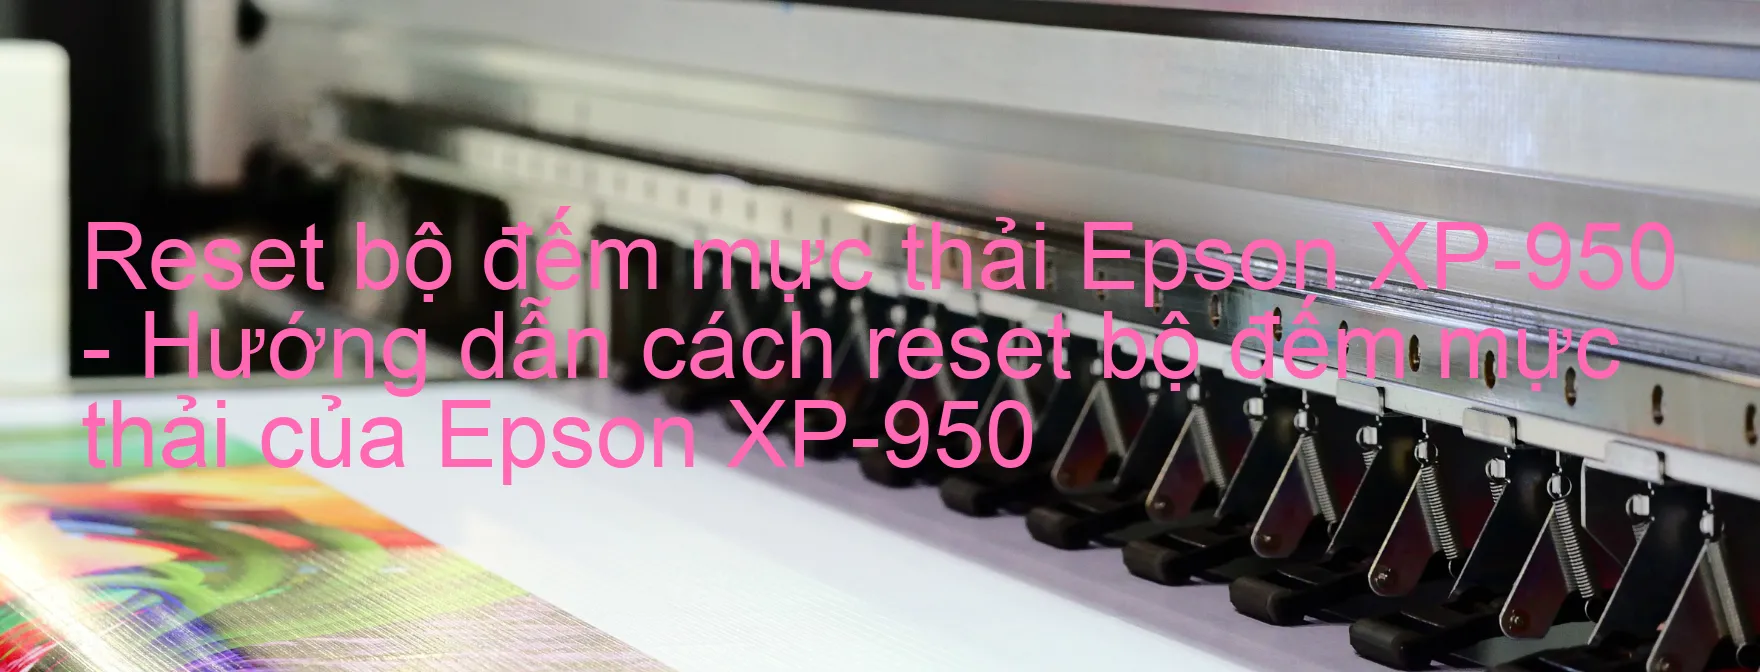 Reset bộ đếm mực thải Epson XP-950 - Hướng dẫn cách reset bộ đếm mực thải của Epson XP-950